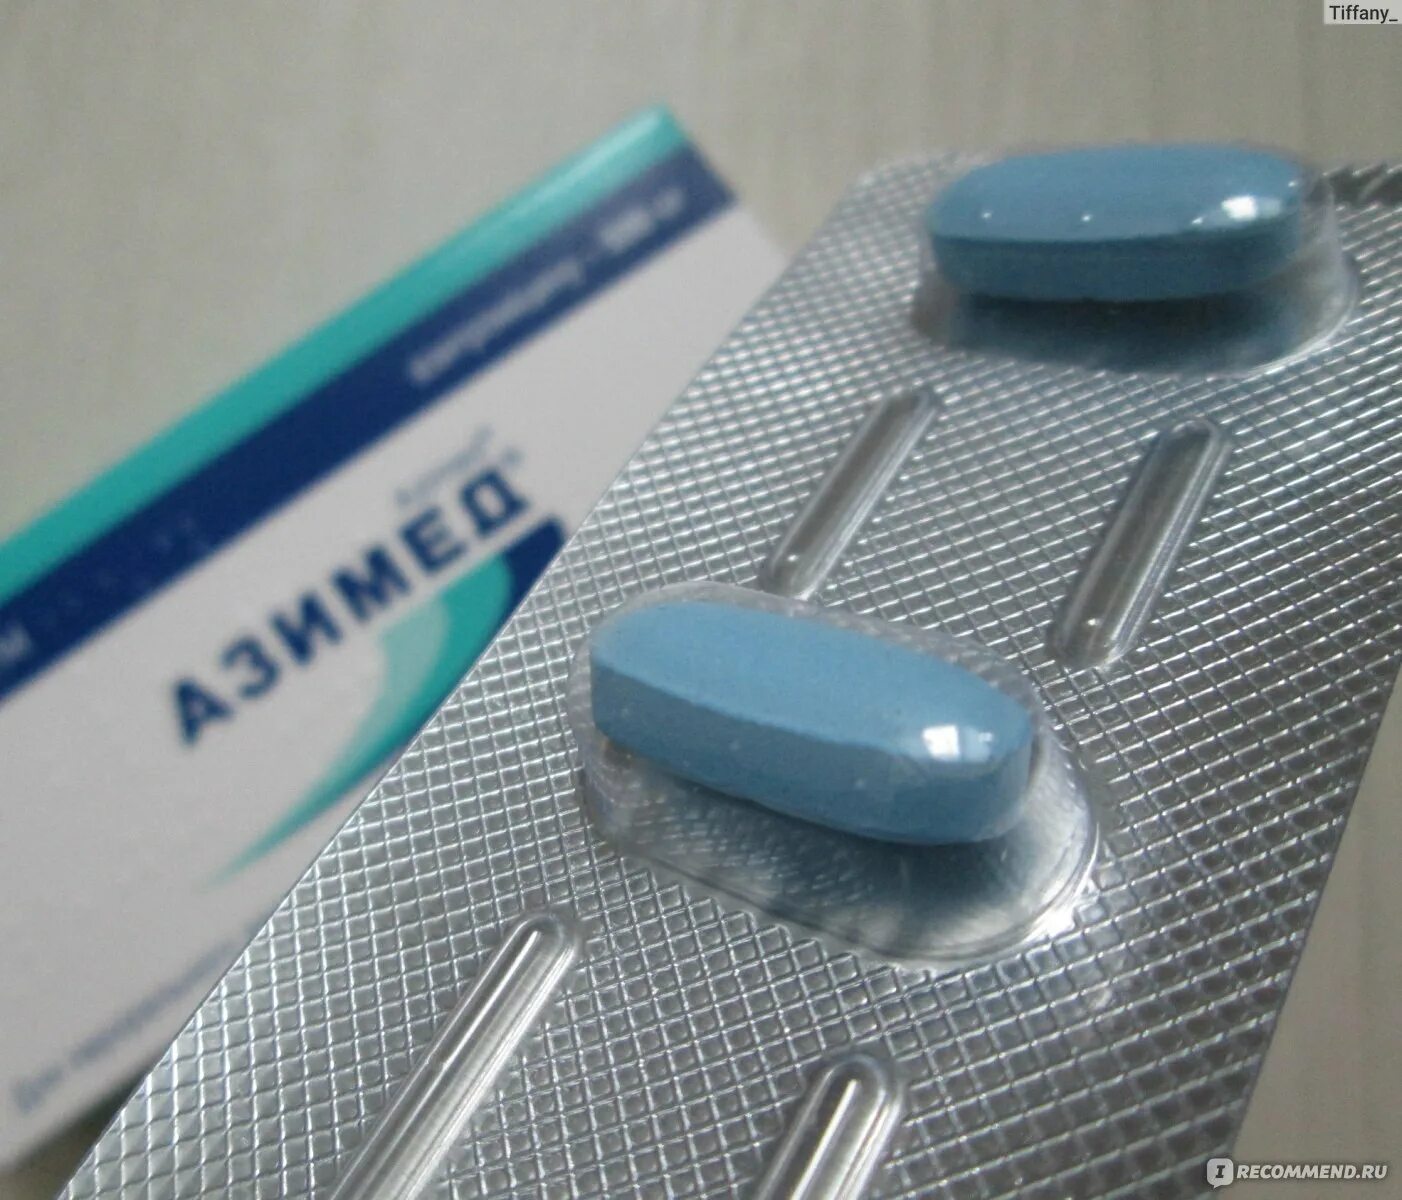 Антибиотик сильный при боли. Антибиотик синие таблетки. Антибиотик голубые таблетки. Антибиотик большая овальная таблетка. Антибиотики синие капсулы.